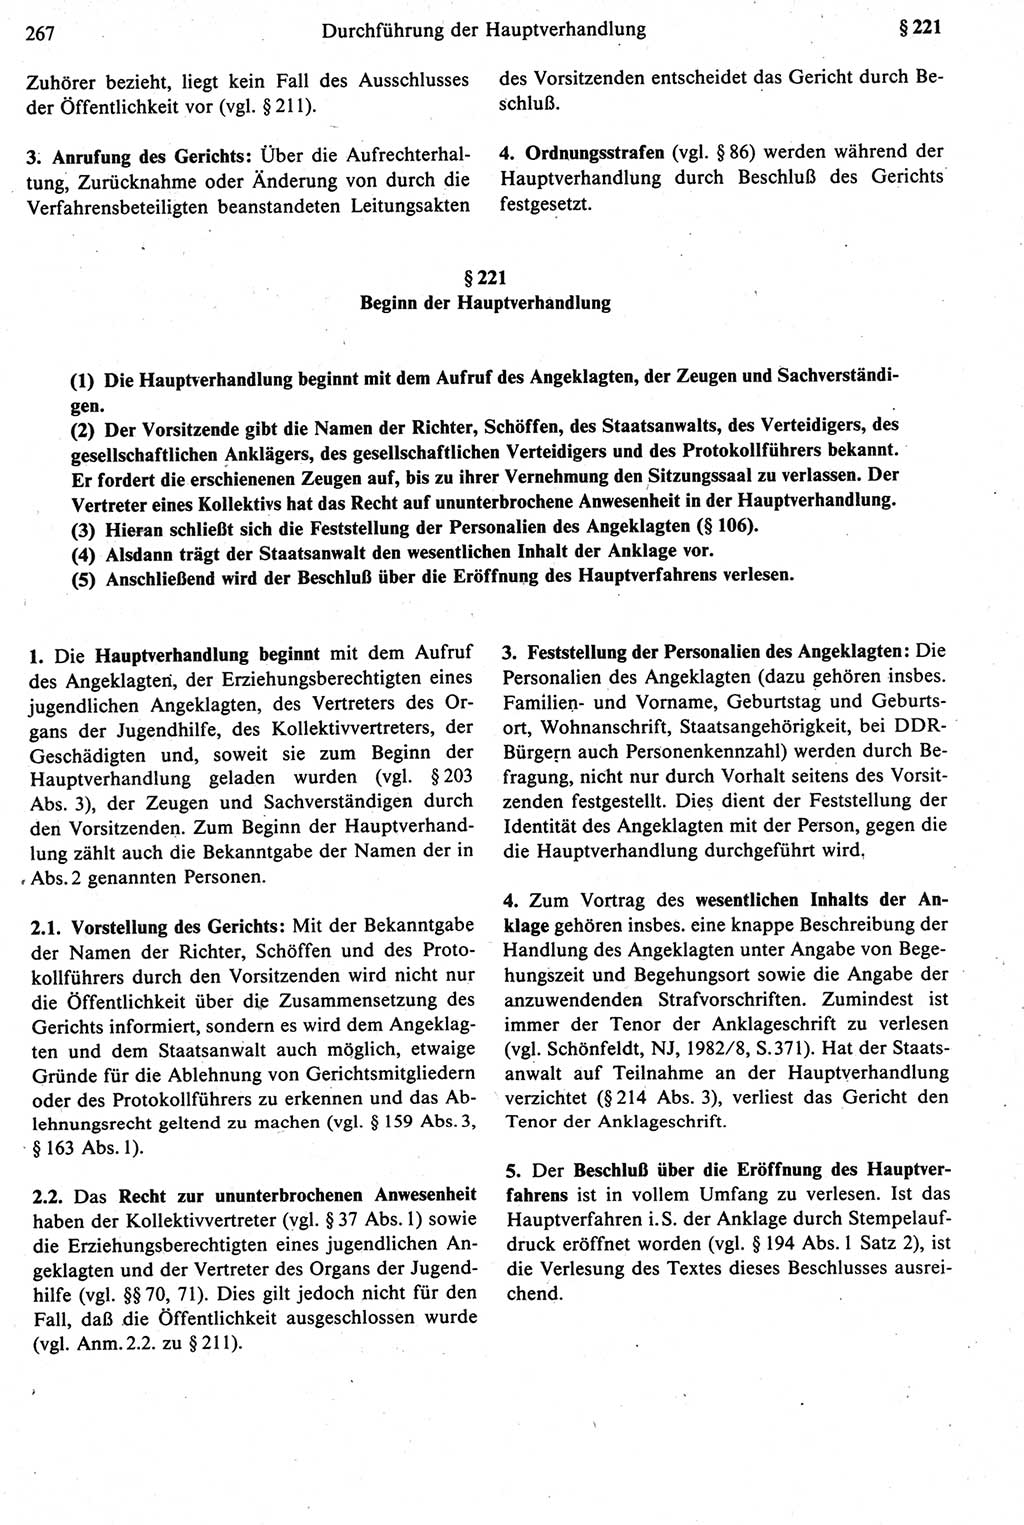 Strafprozeßrecht der DDR [Deutsche Demokratische Republik], Kommentar zur Strafprozeßordnung (StPO) 1987, Seite 267 (Strafprozeßr. DDR Komm. StPO 1987, S. 267)